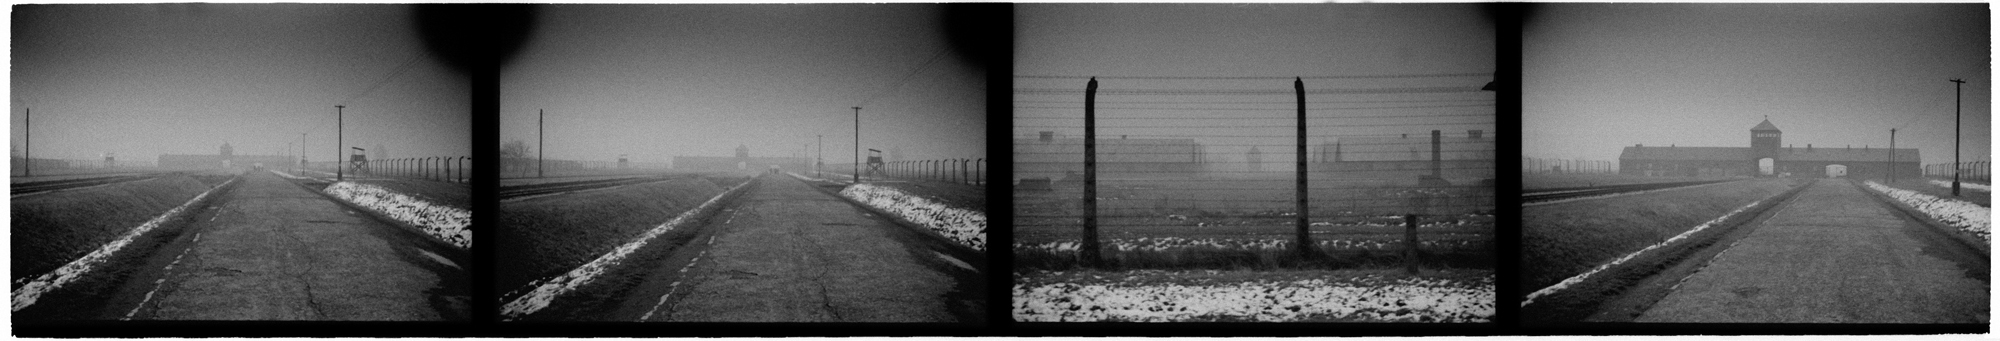 Auschwitz_revisited0010.jpg